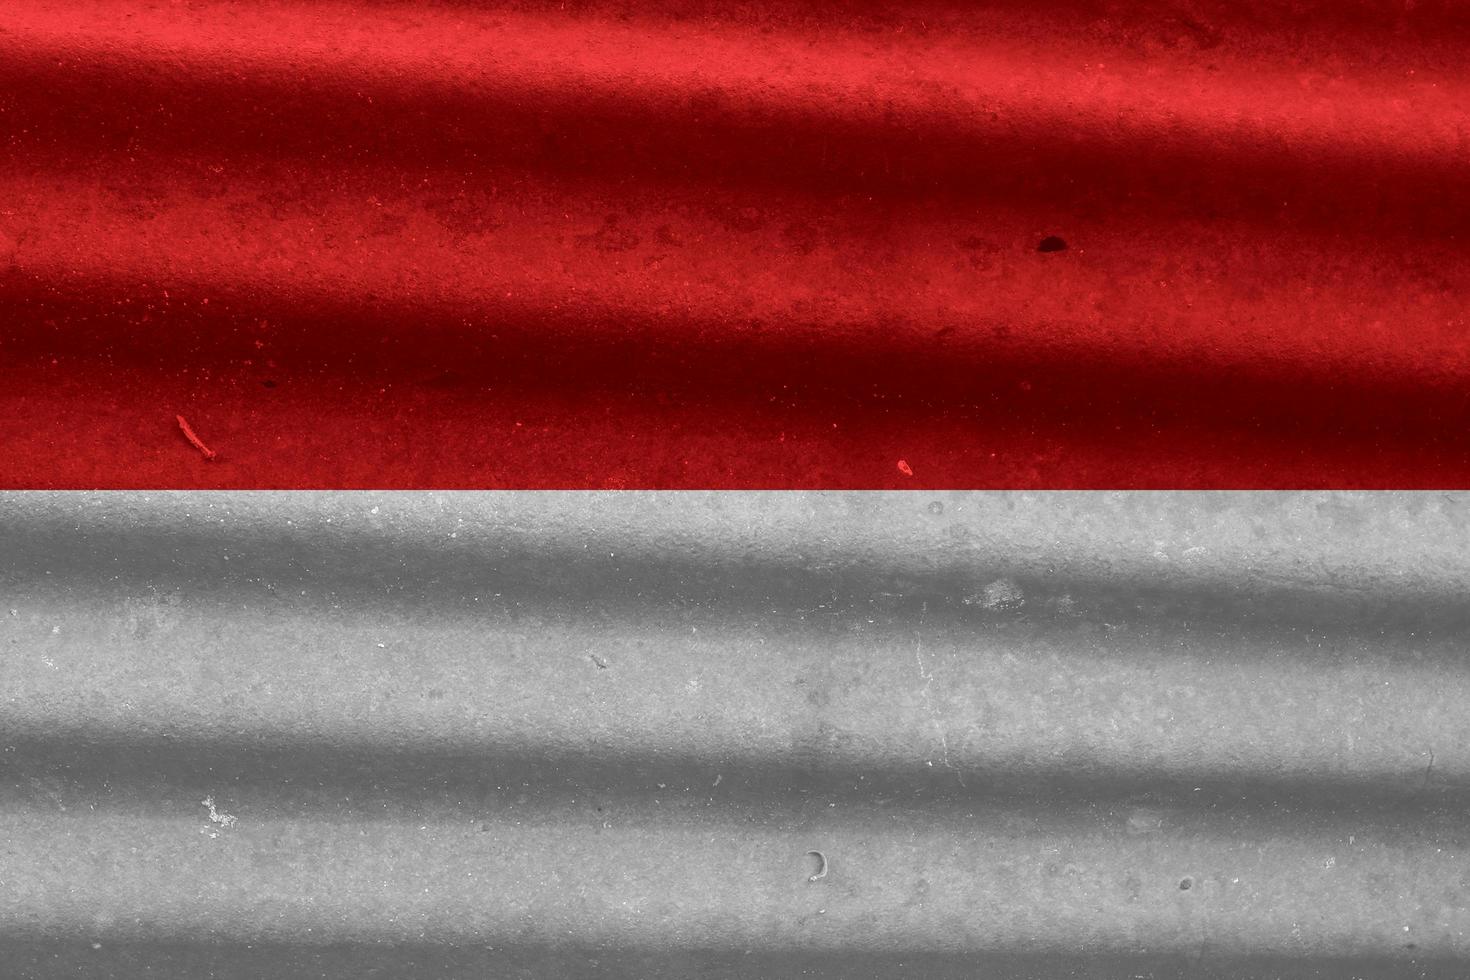 textura de bandera indonesia como fondo foto